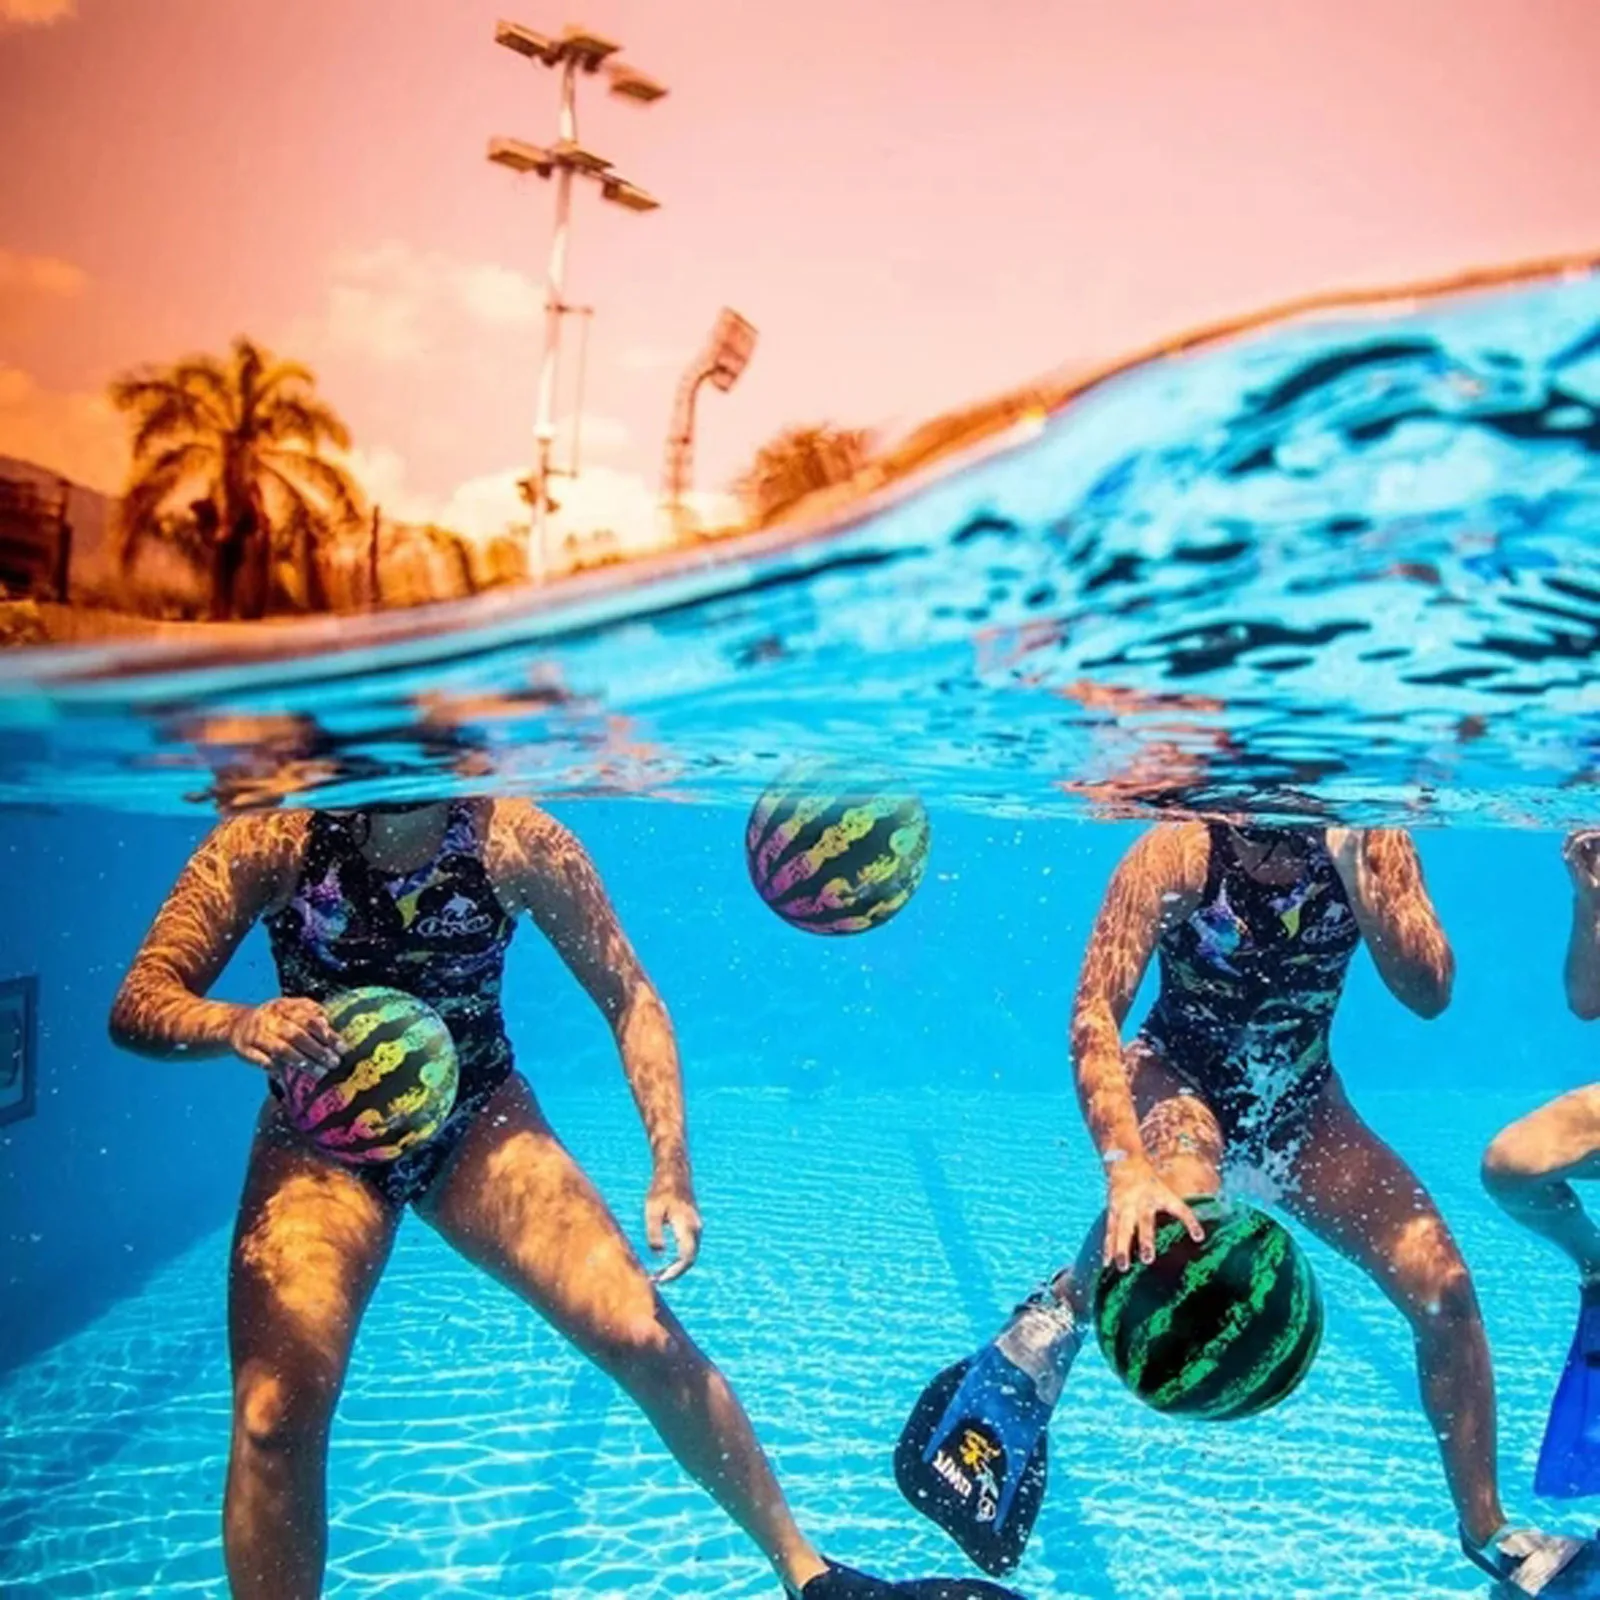 

Летний бассейн водный мяч игрушка для сбора игровых мячей бассейн Летающий водяной мяч для прохождения под водой 2 водяных мяча/инжектор